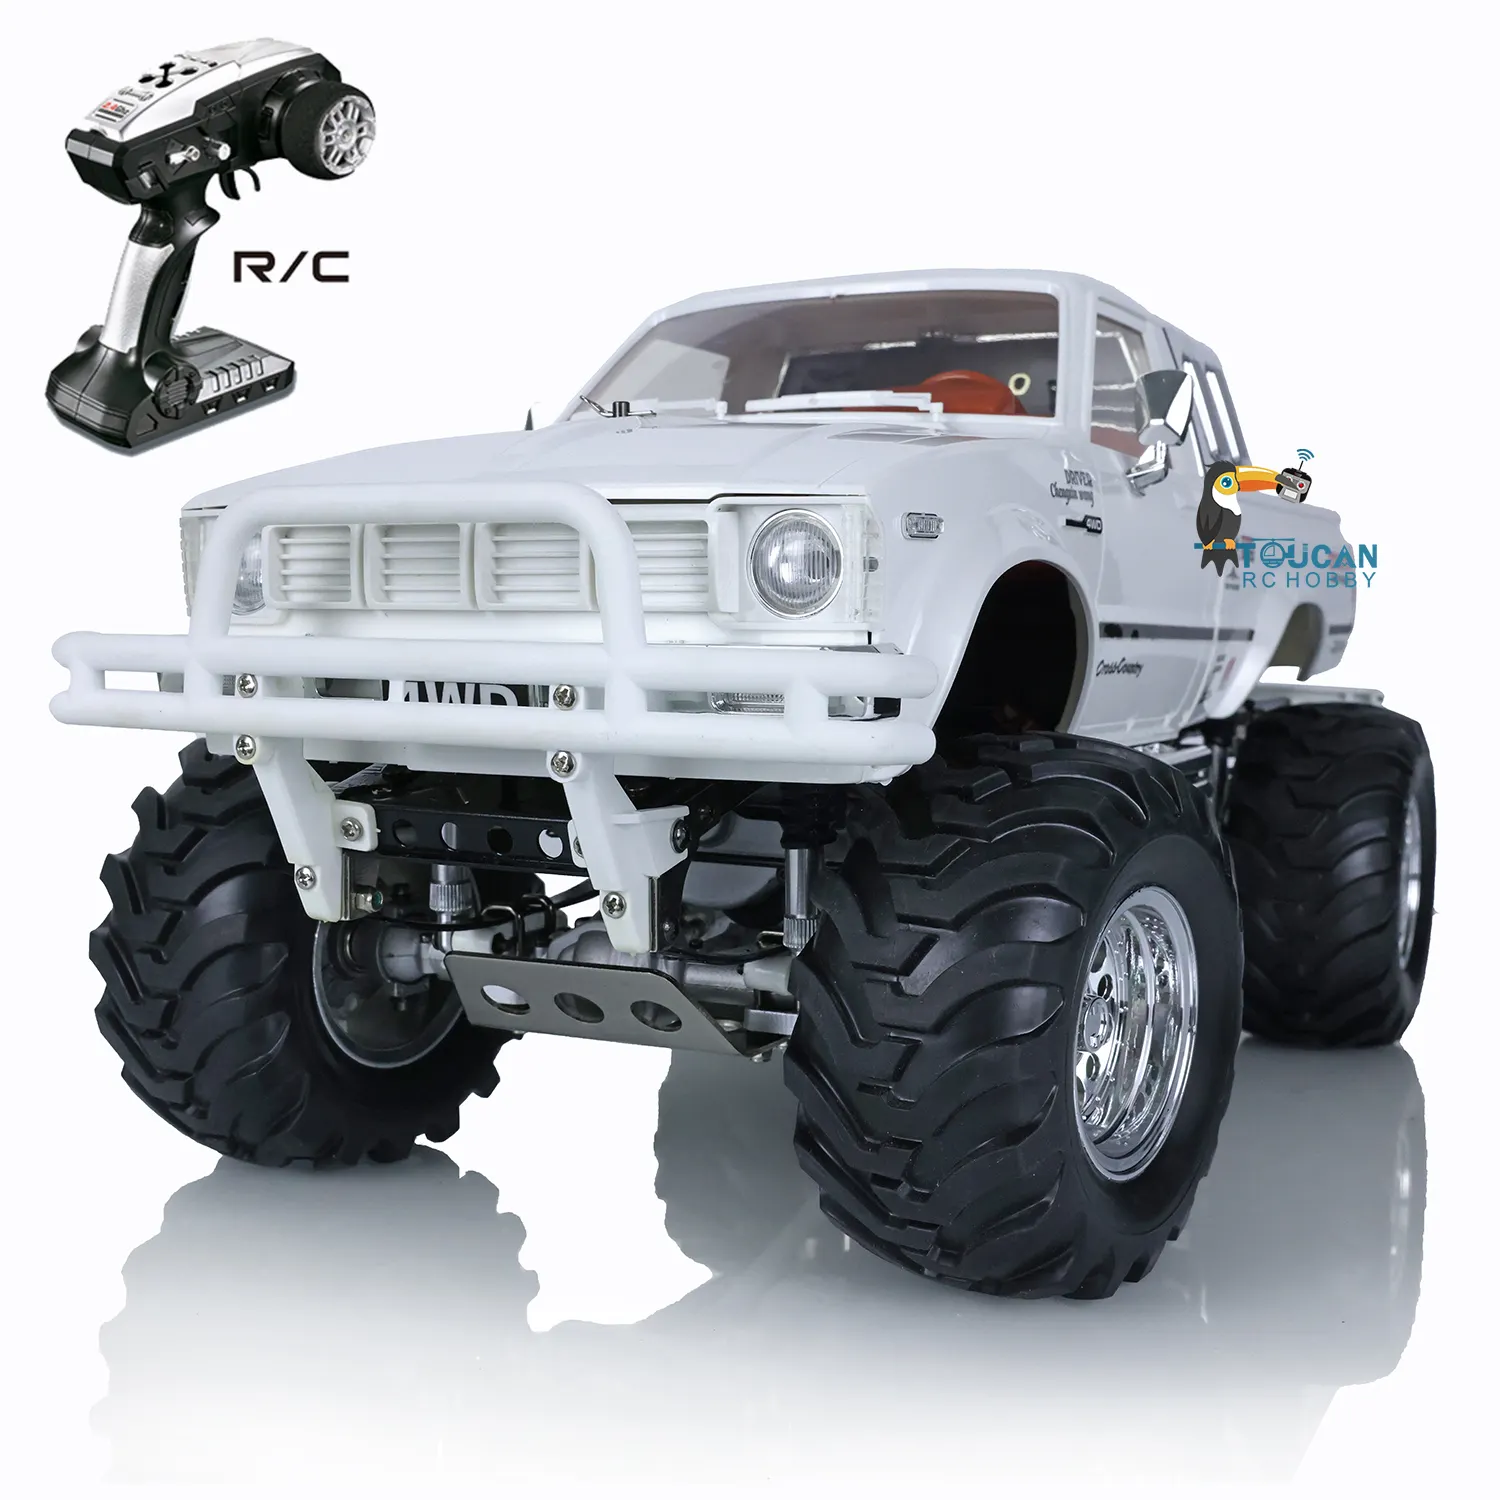 HG 1/10 RC blanc pick-up 4*4 P407 rallye voiture course sur chenilles camion 2.4G RTR moteur modèle jouets de plein air pour garçons cadeau TH04710-SMT6